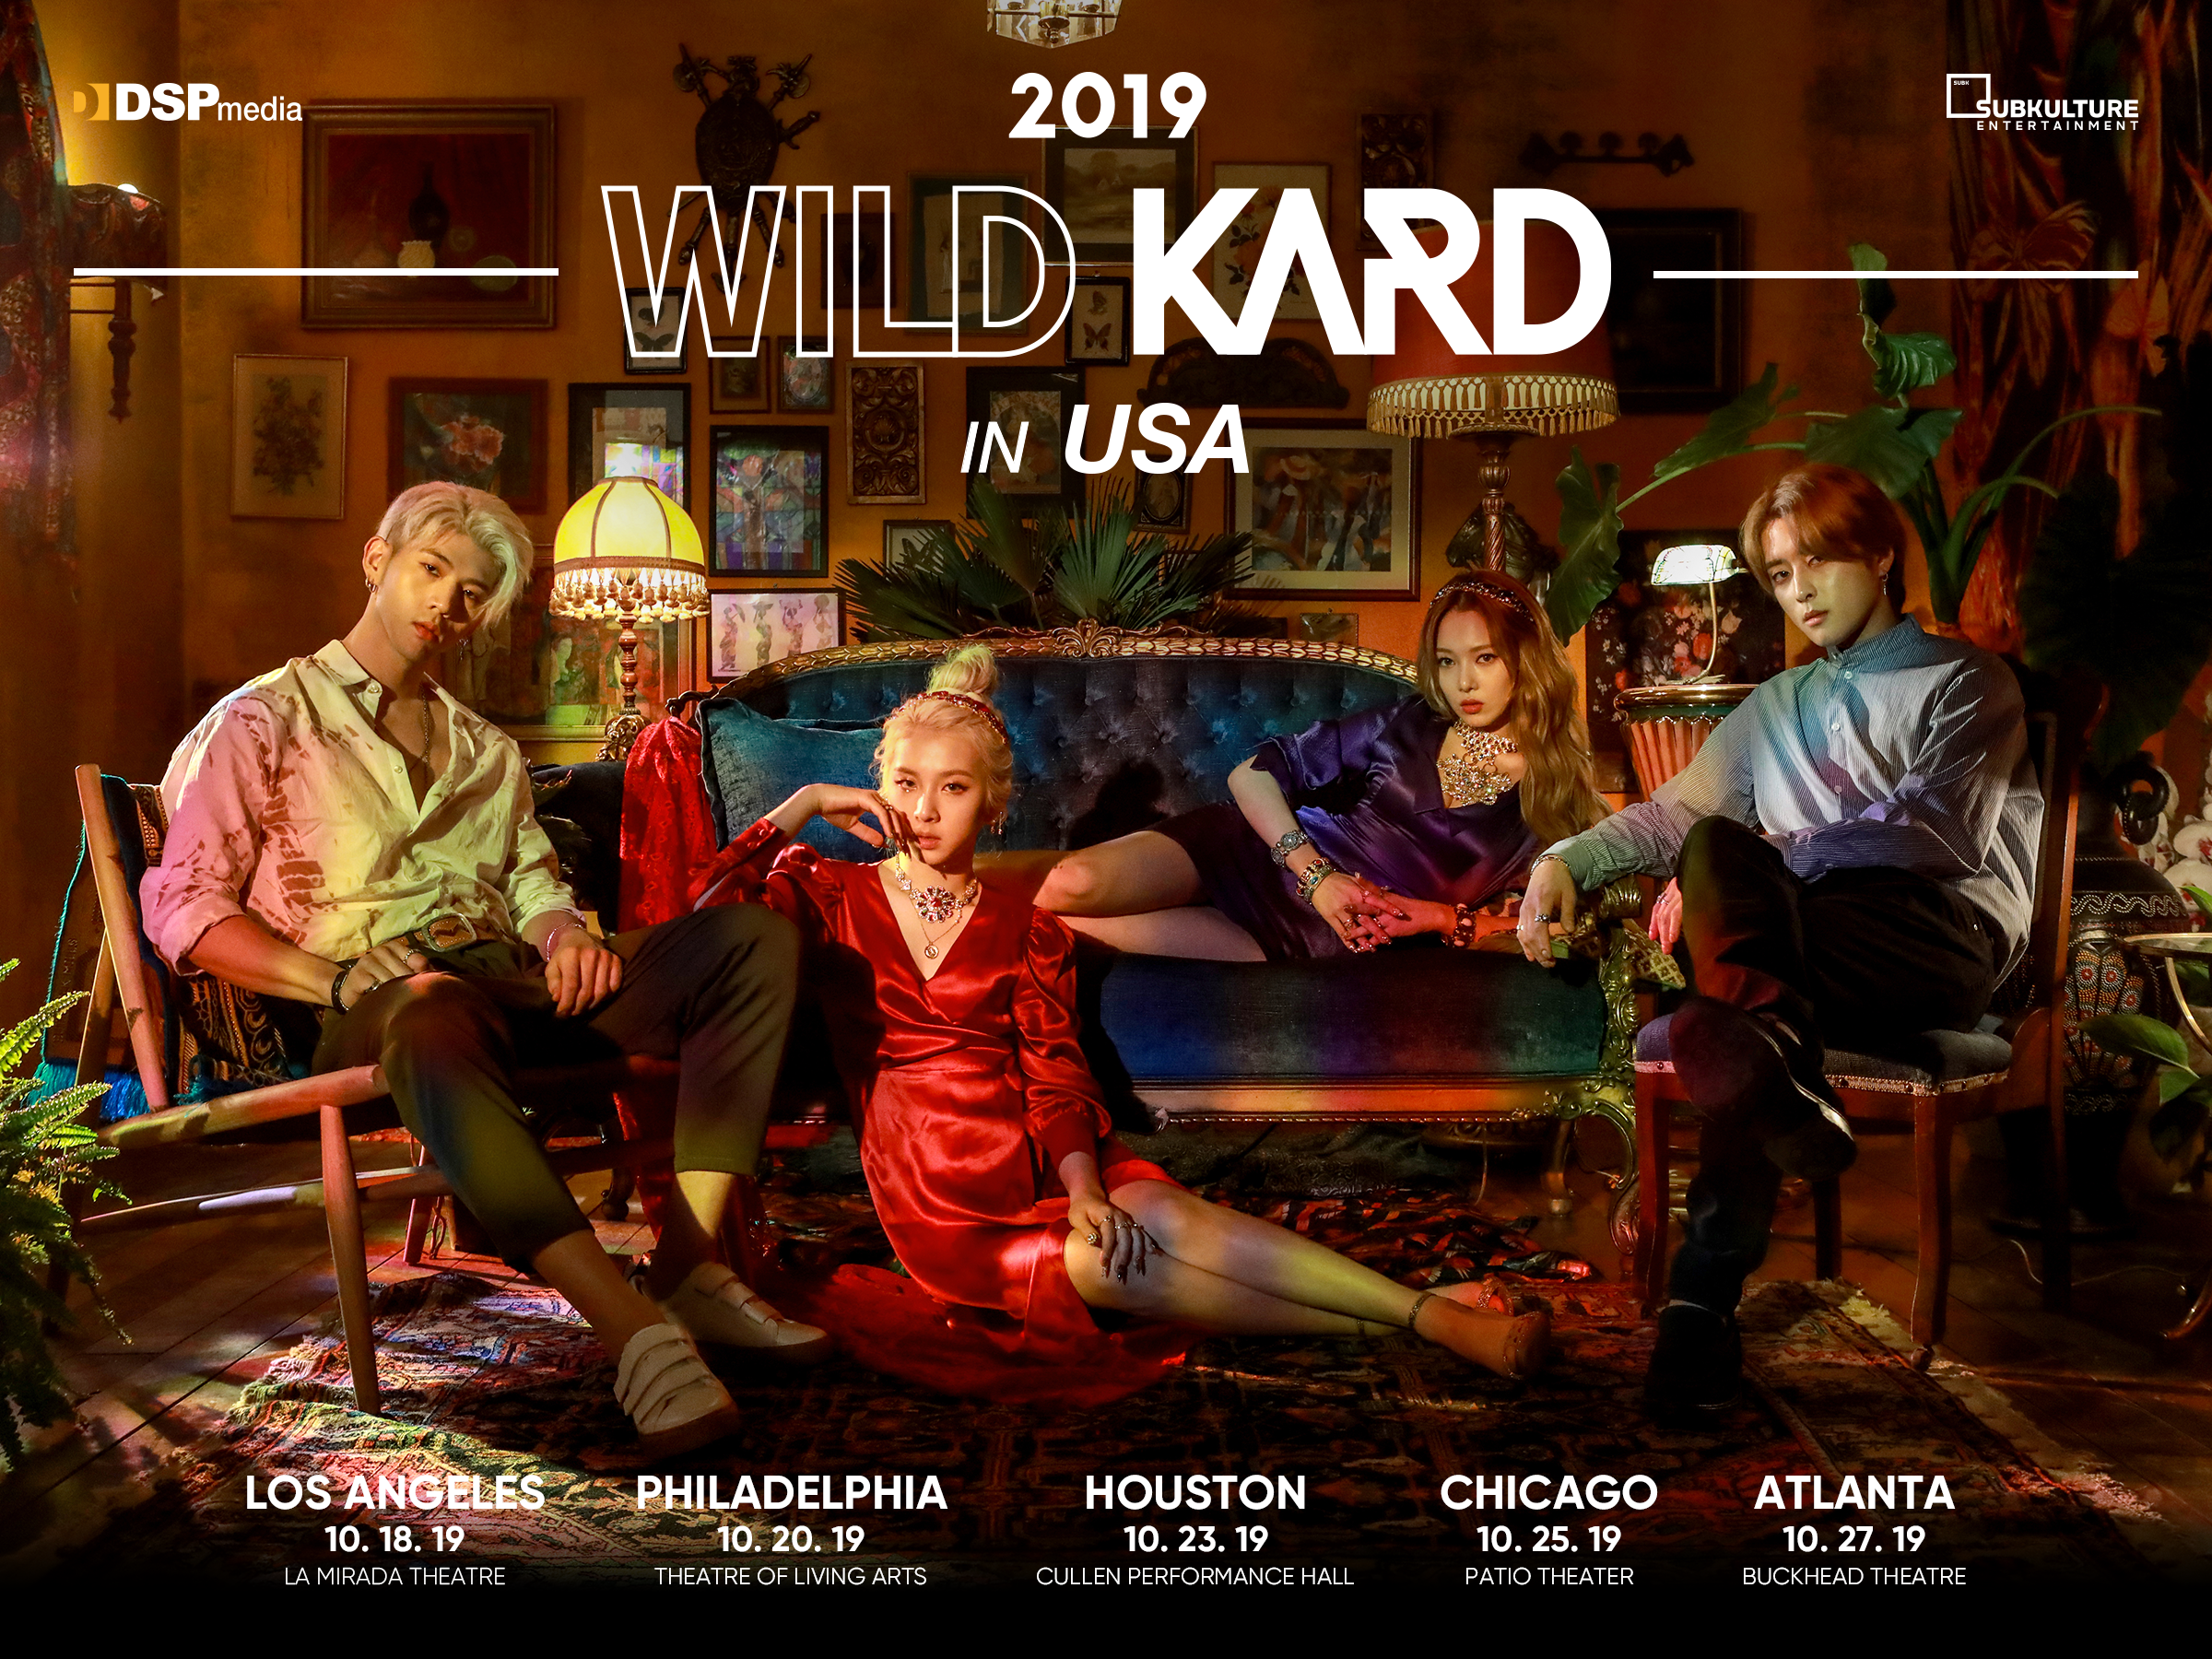 2019 WILD KARD TOUR IN USA